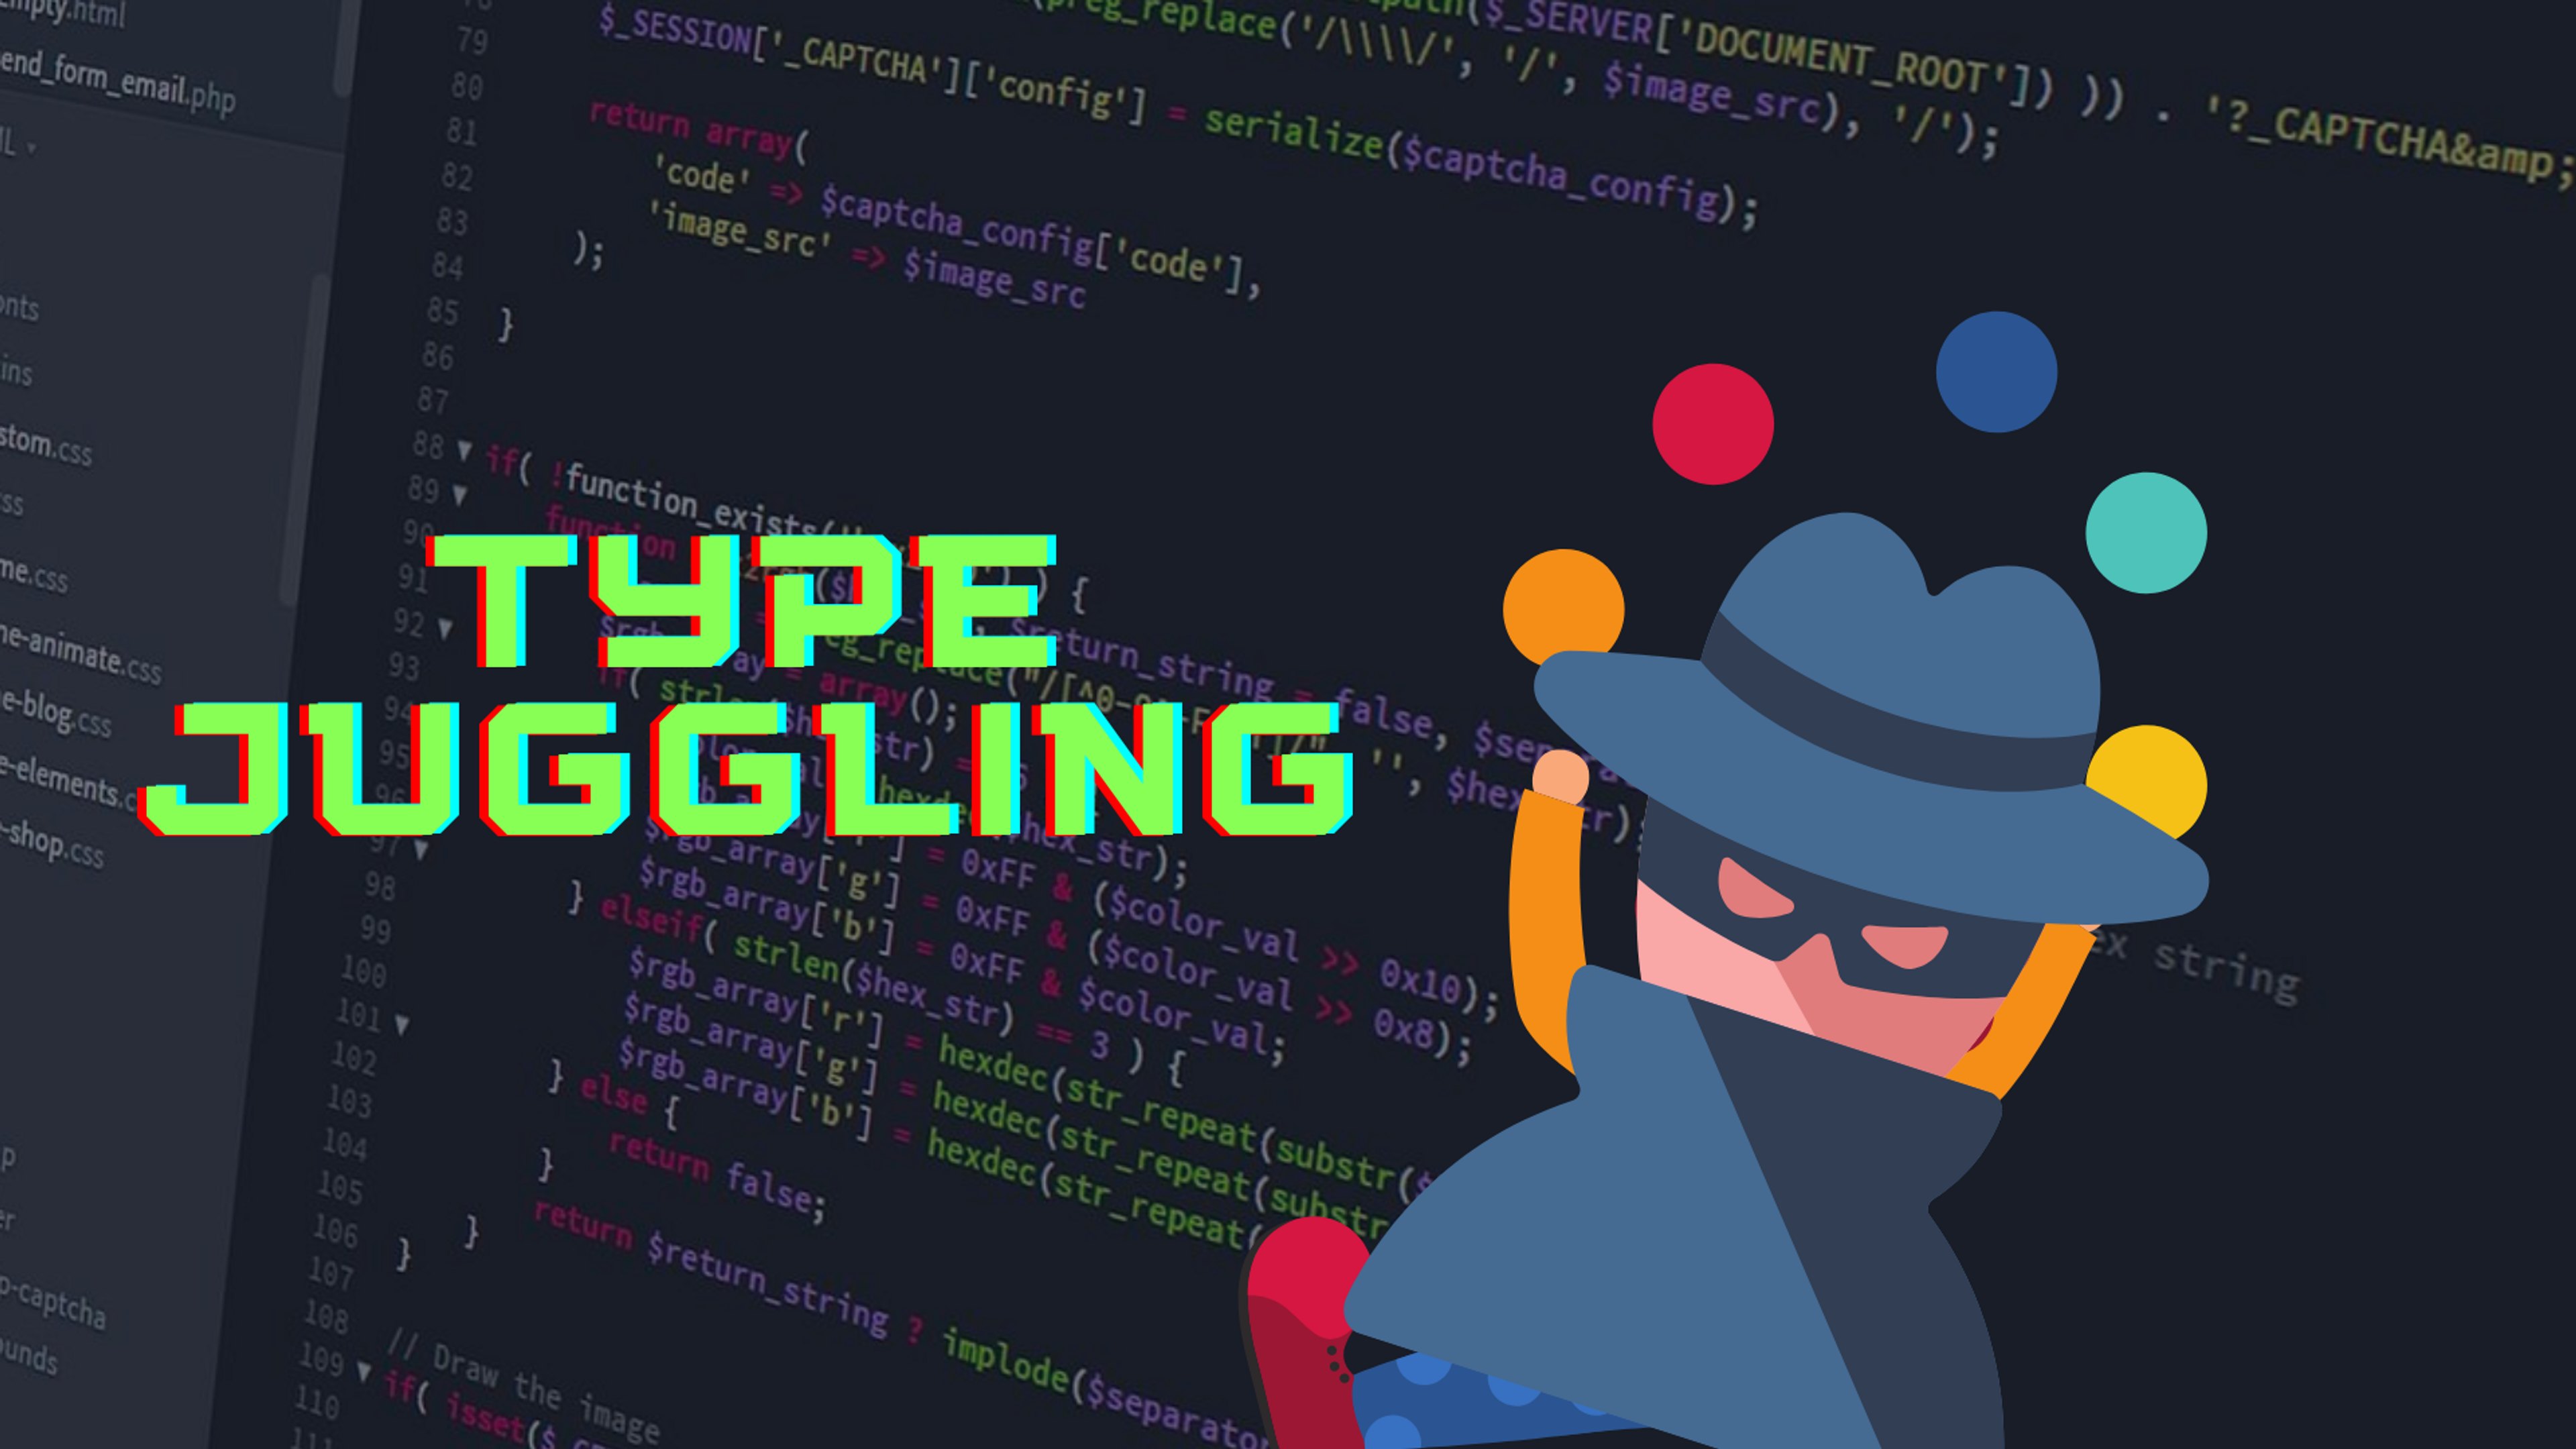 Type-juggling vulnerabilities